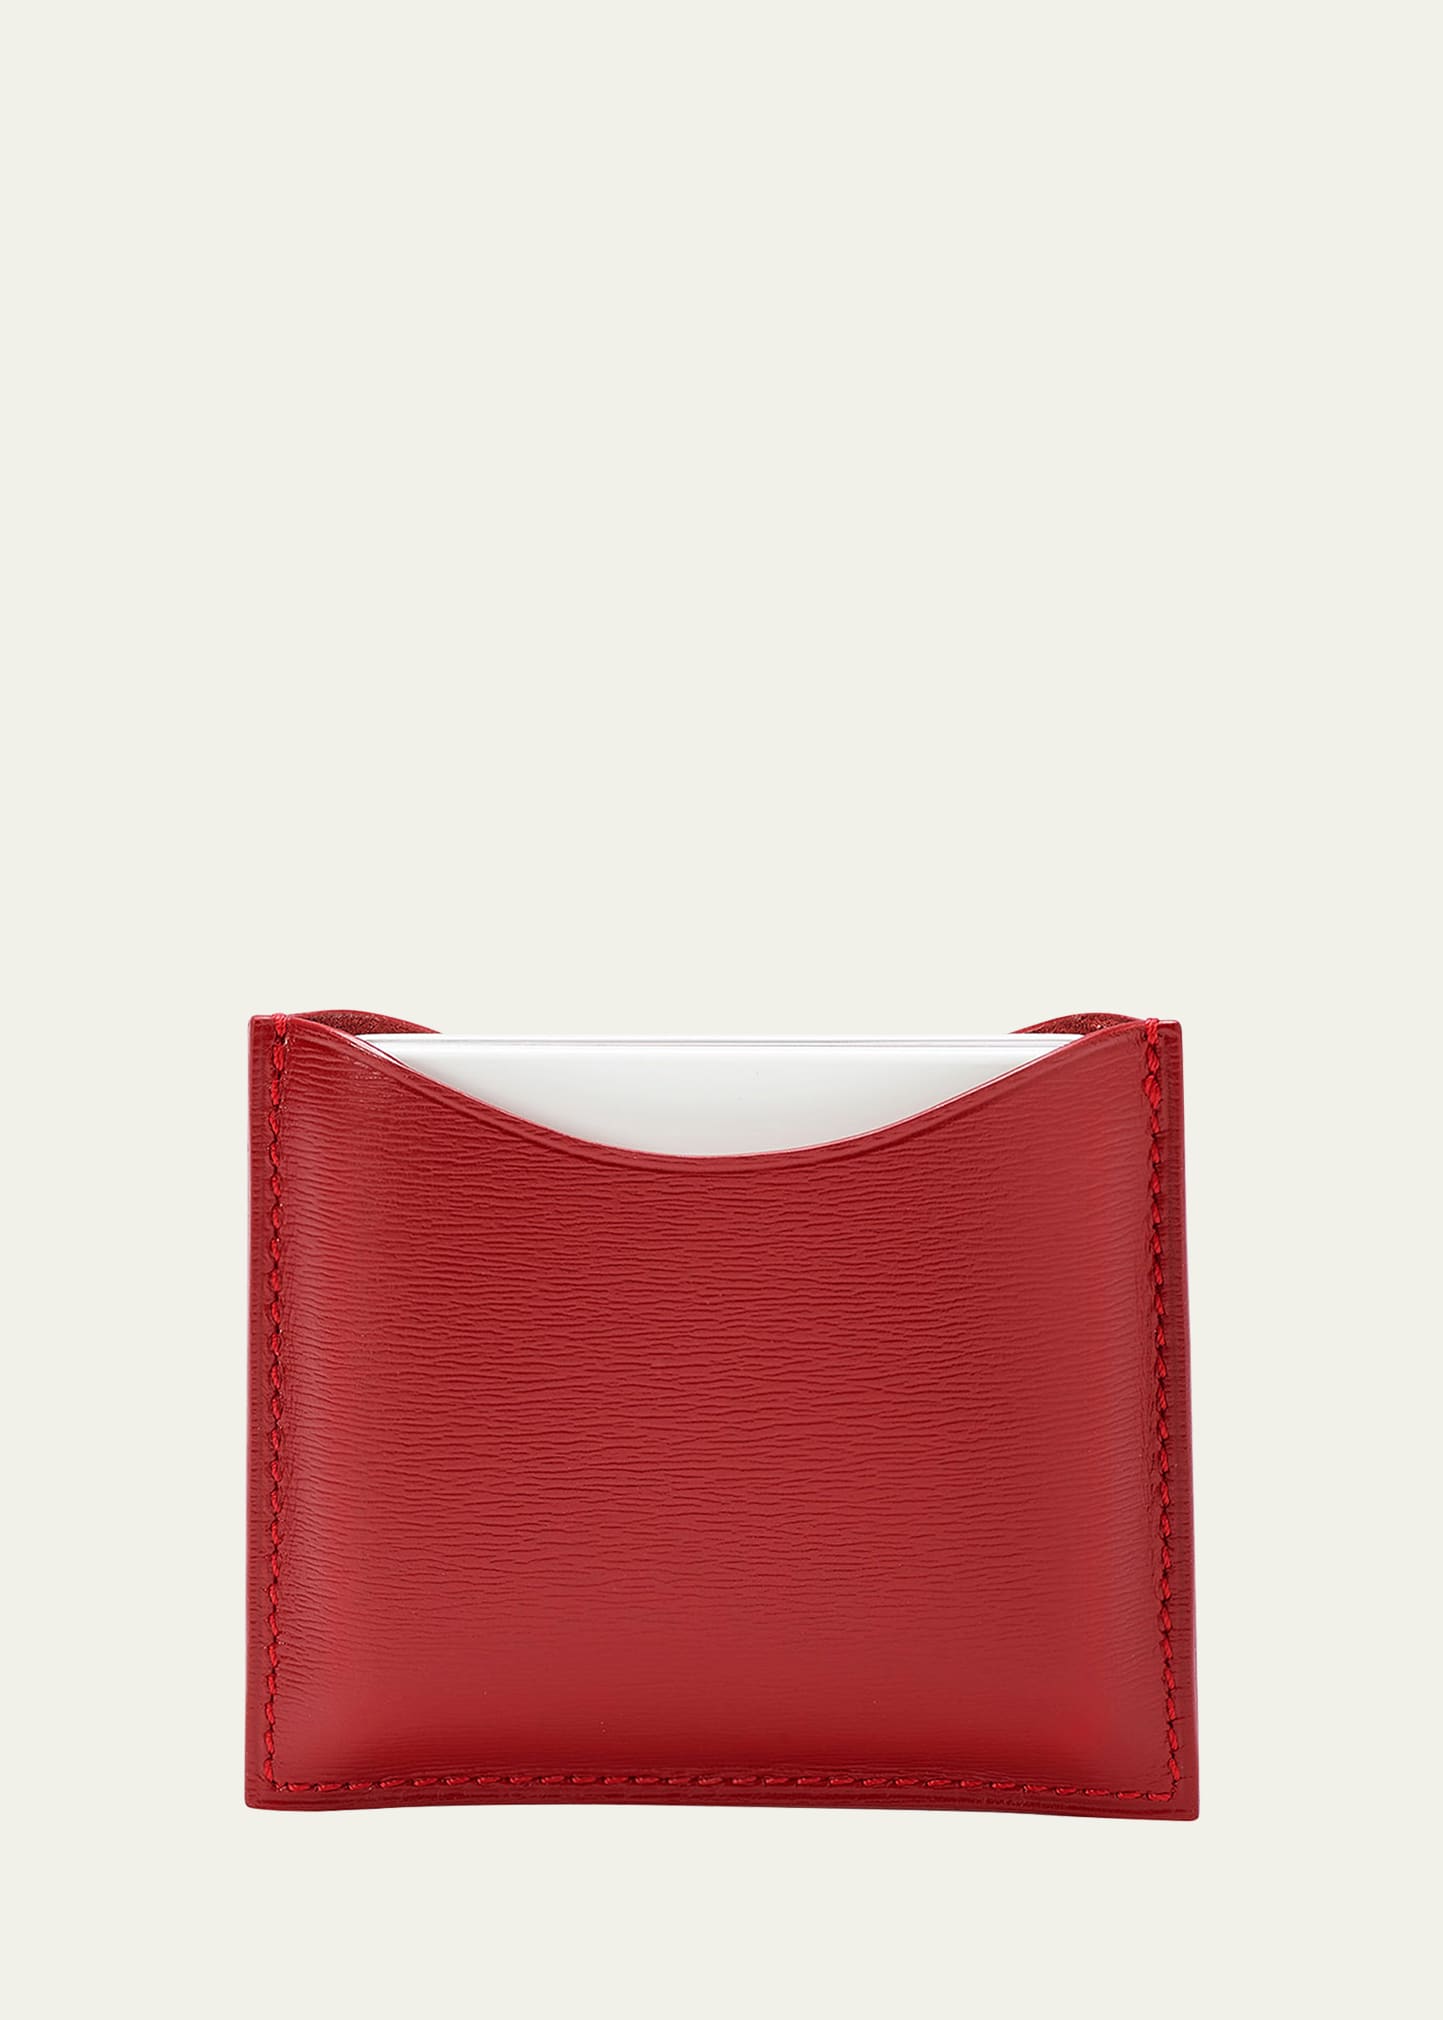 La Bouche Rouge Refillable Leather Compact Case